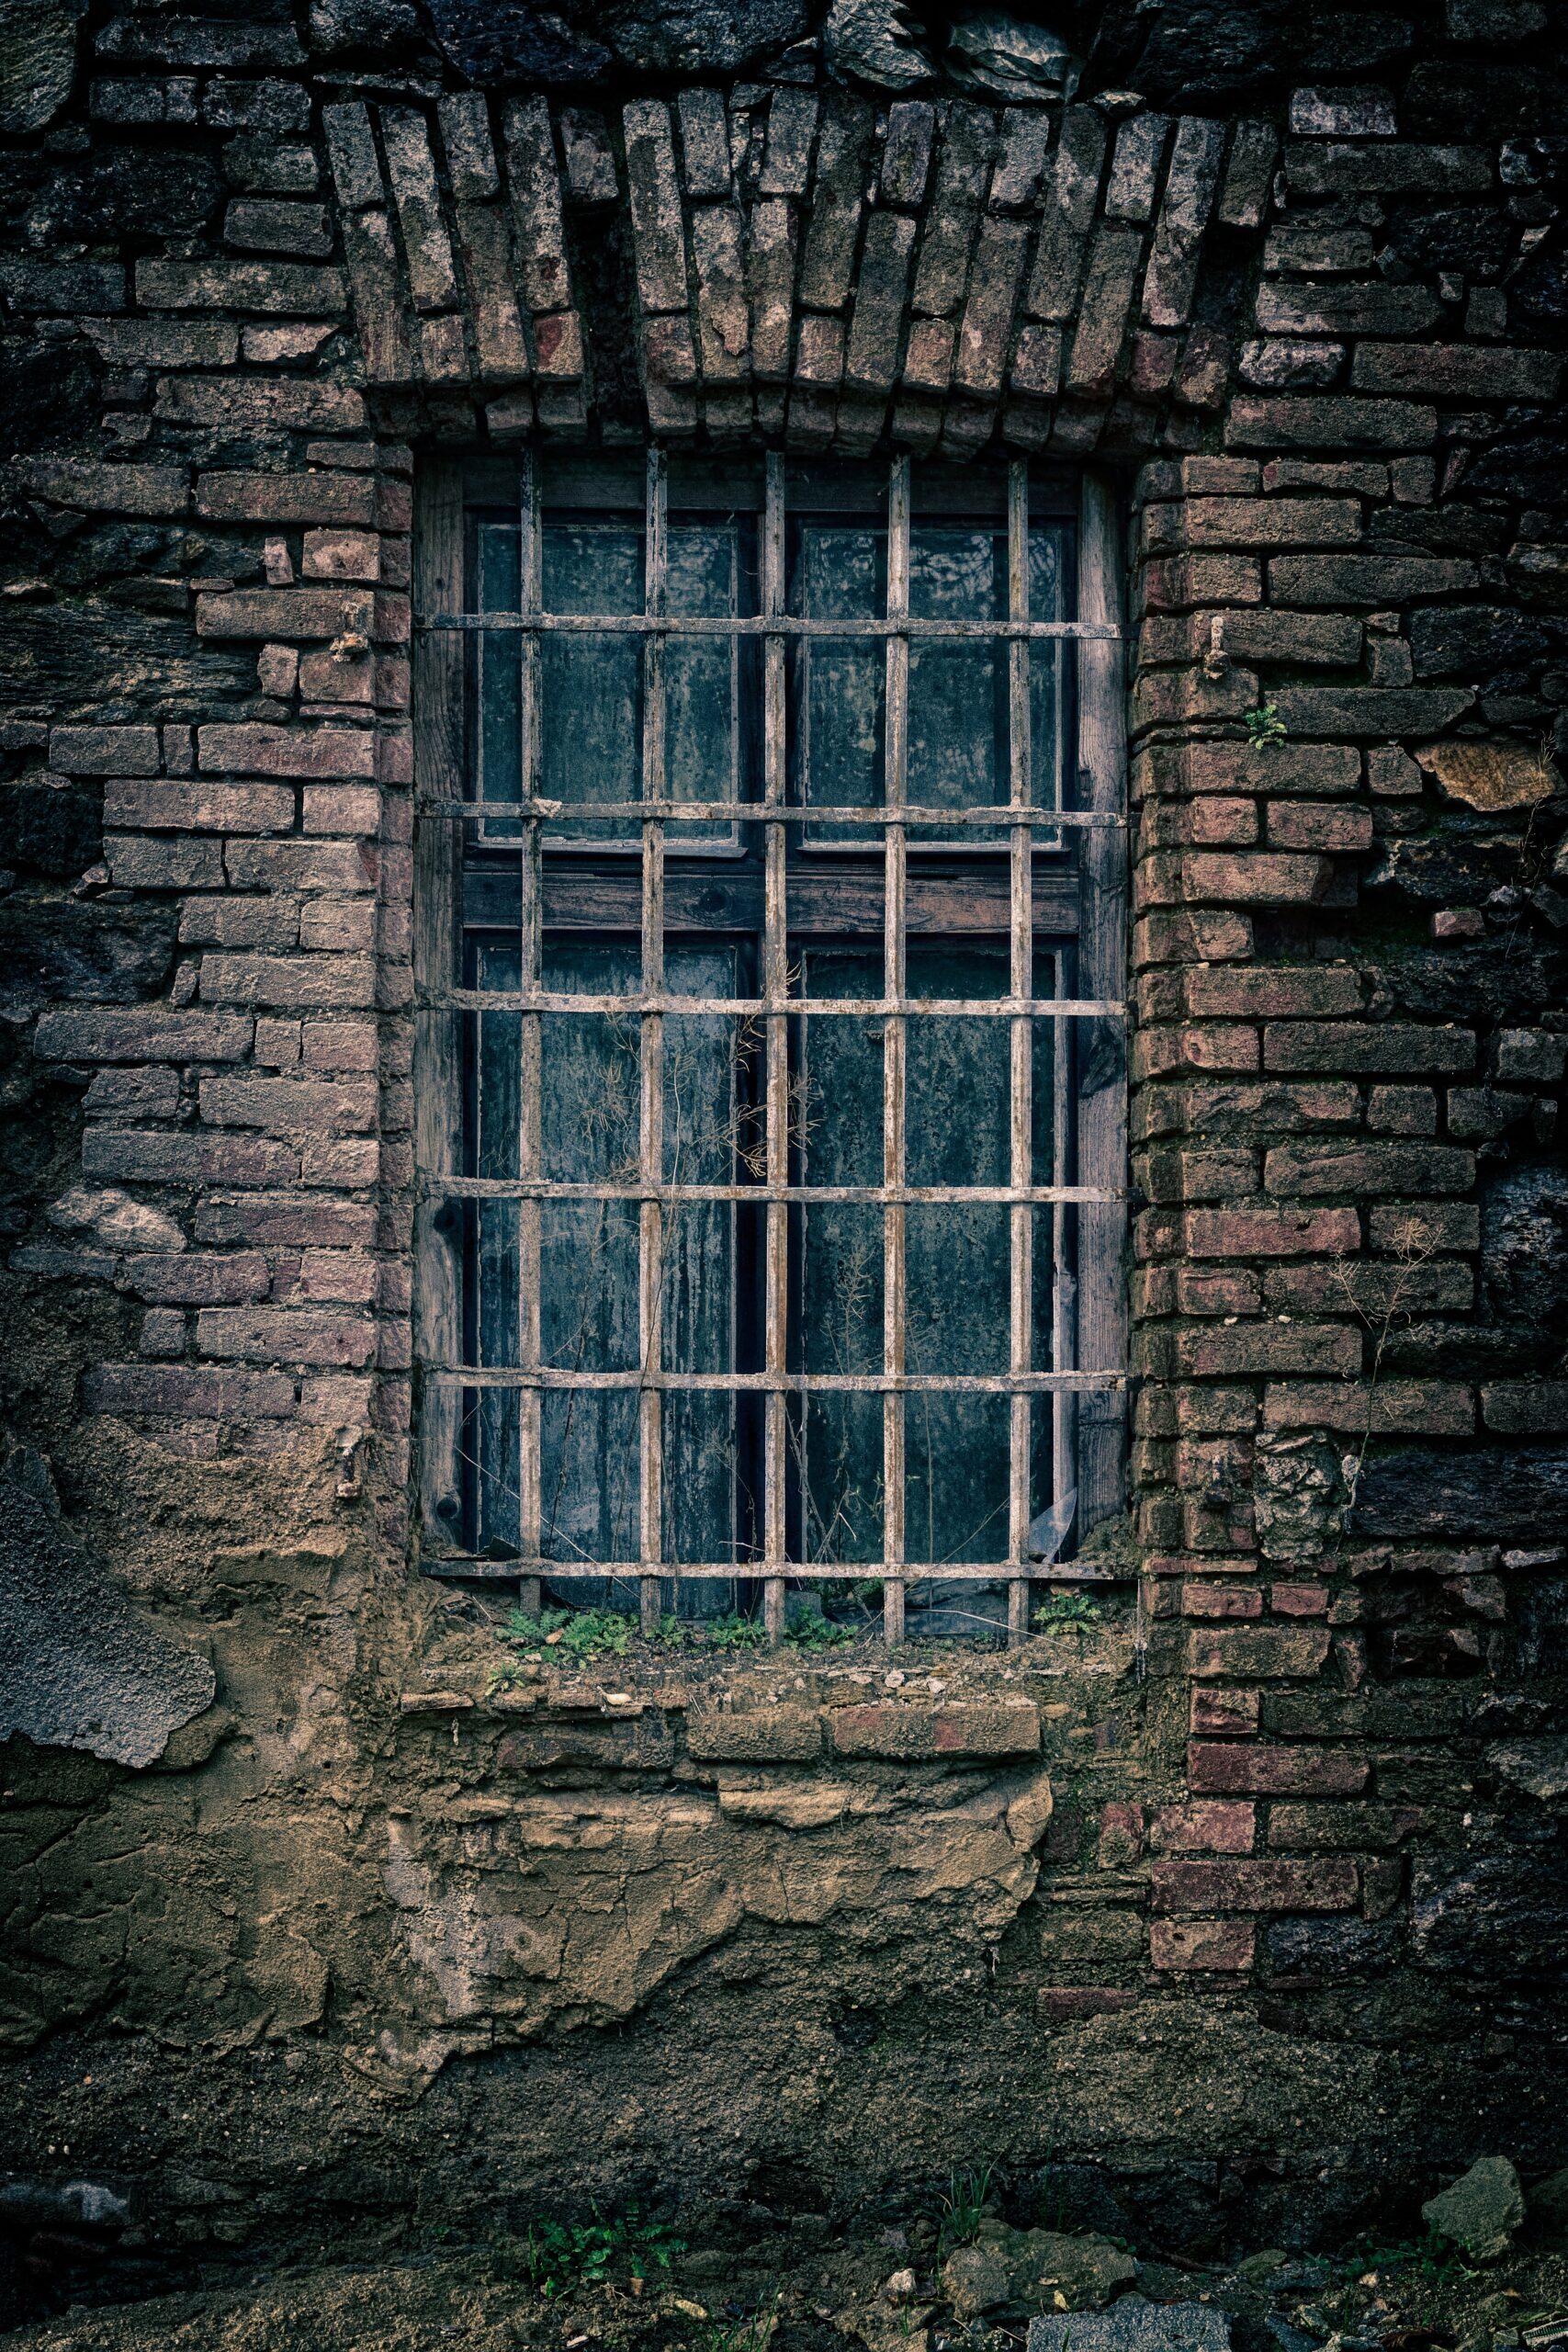 old, barred window in crumbling brick wall